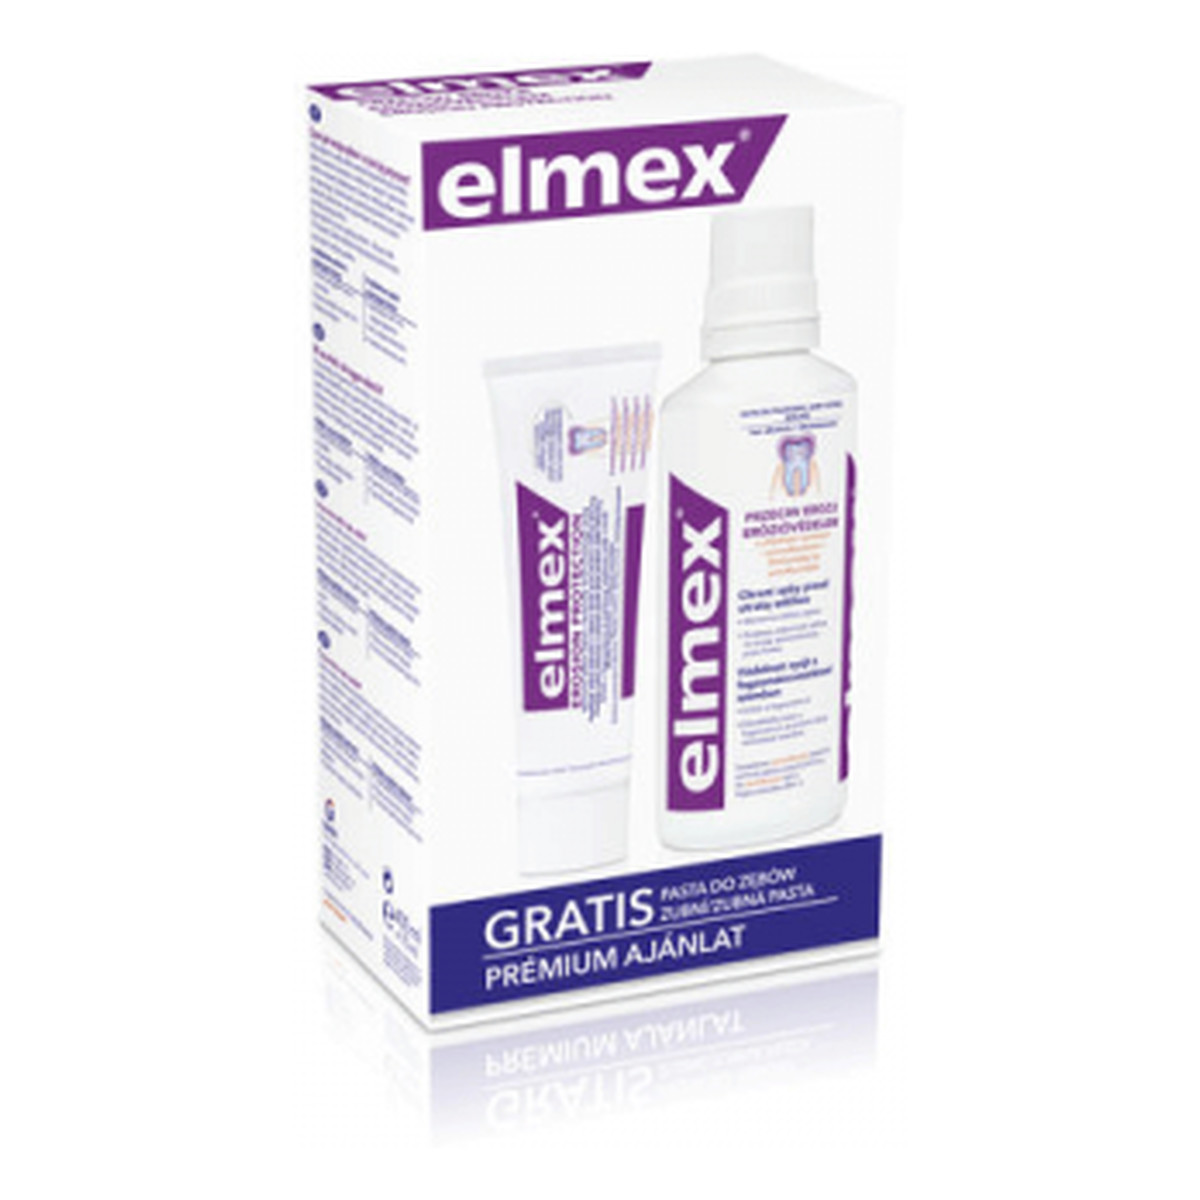 elmex Przeciw Erozji Szkliwa Zestaw - płyn do płukania ust + pasta do zębów